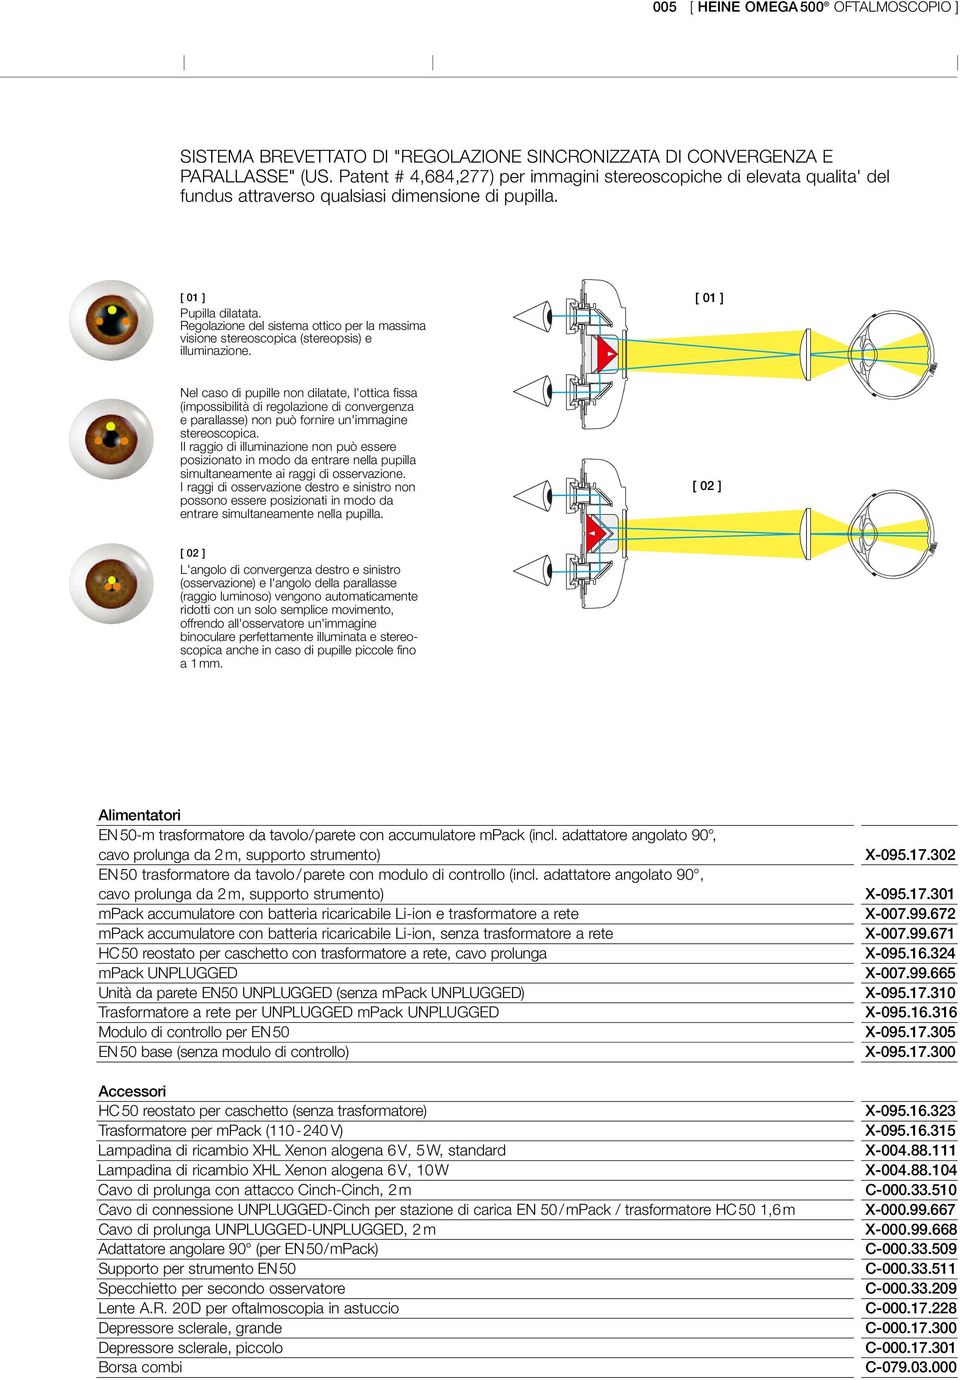 Regolazione del sistema ottico per la massima visione stereoscopica (stereopsis) e illuminazione.